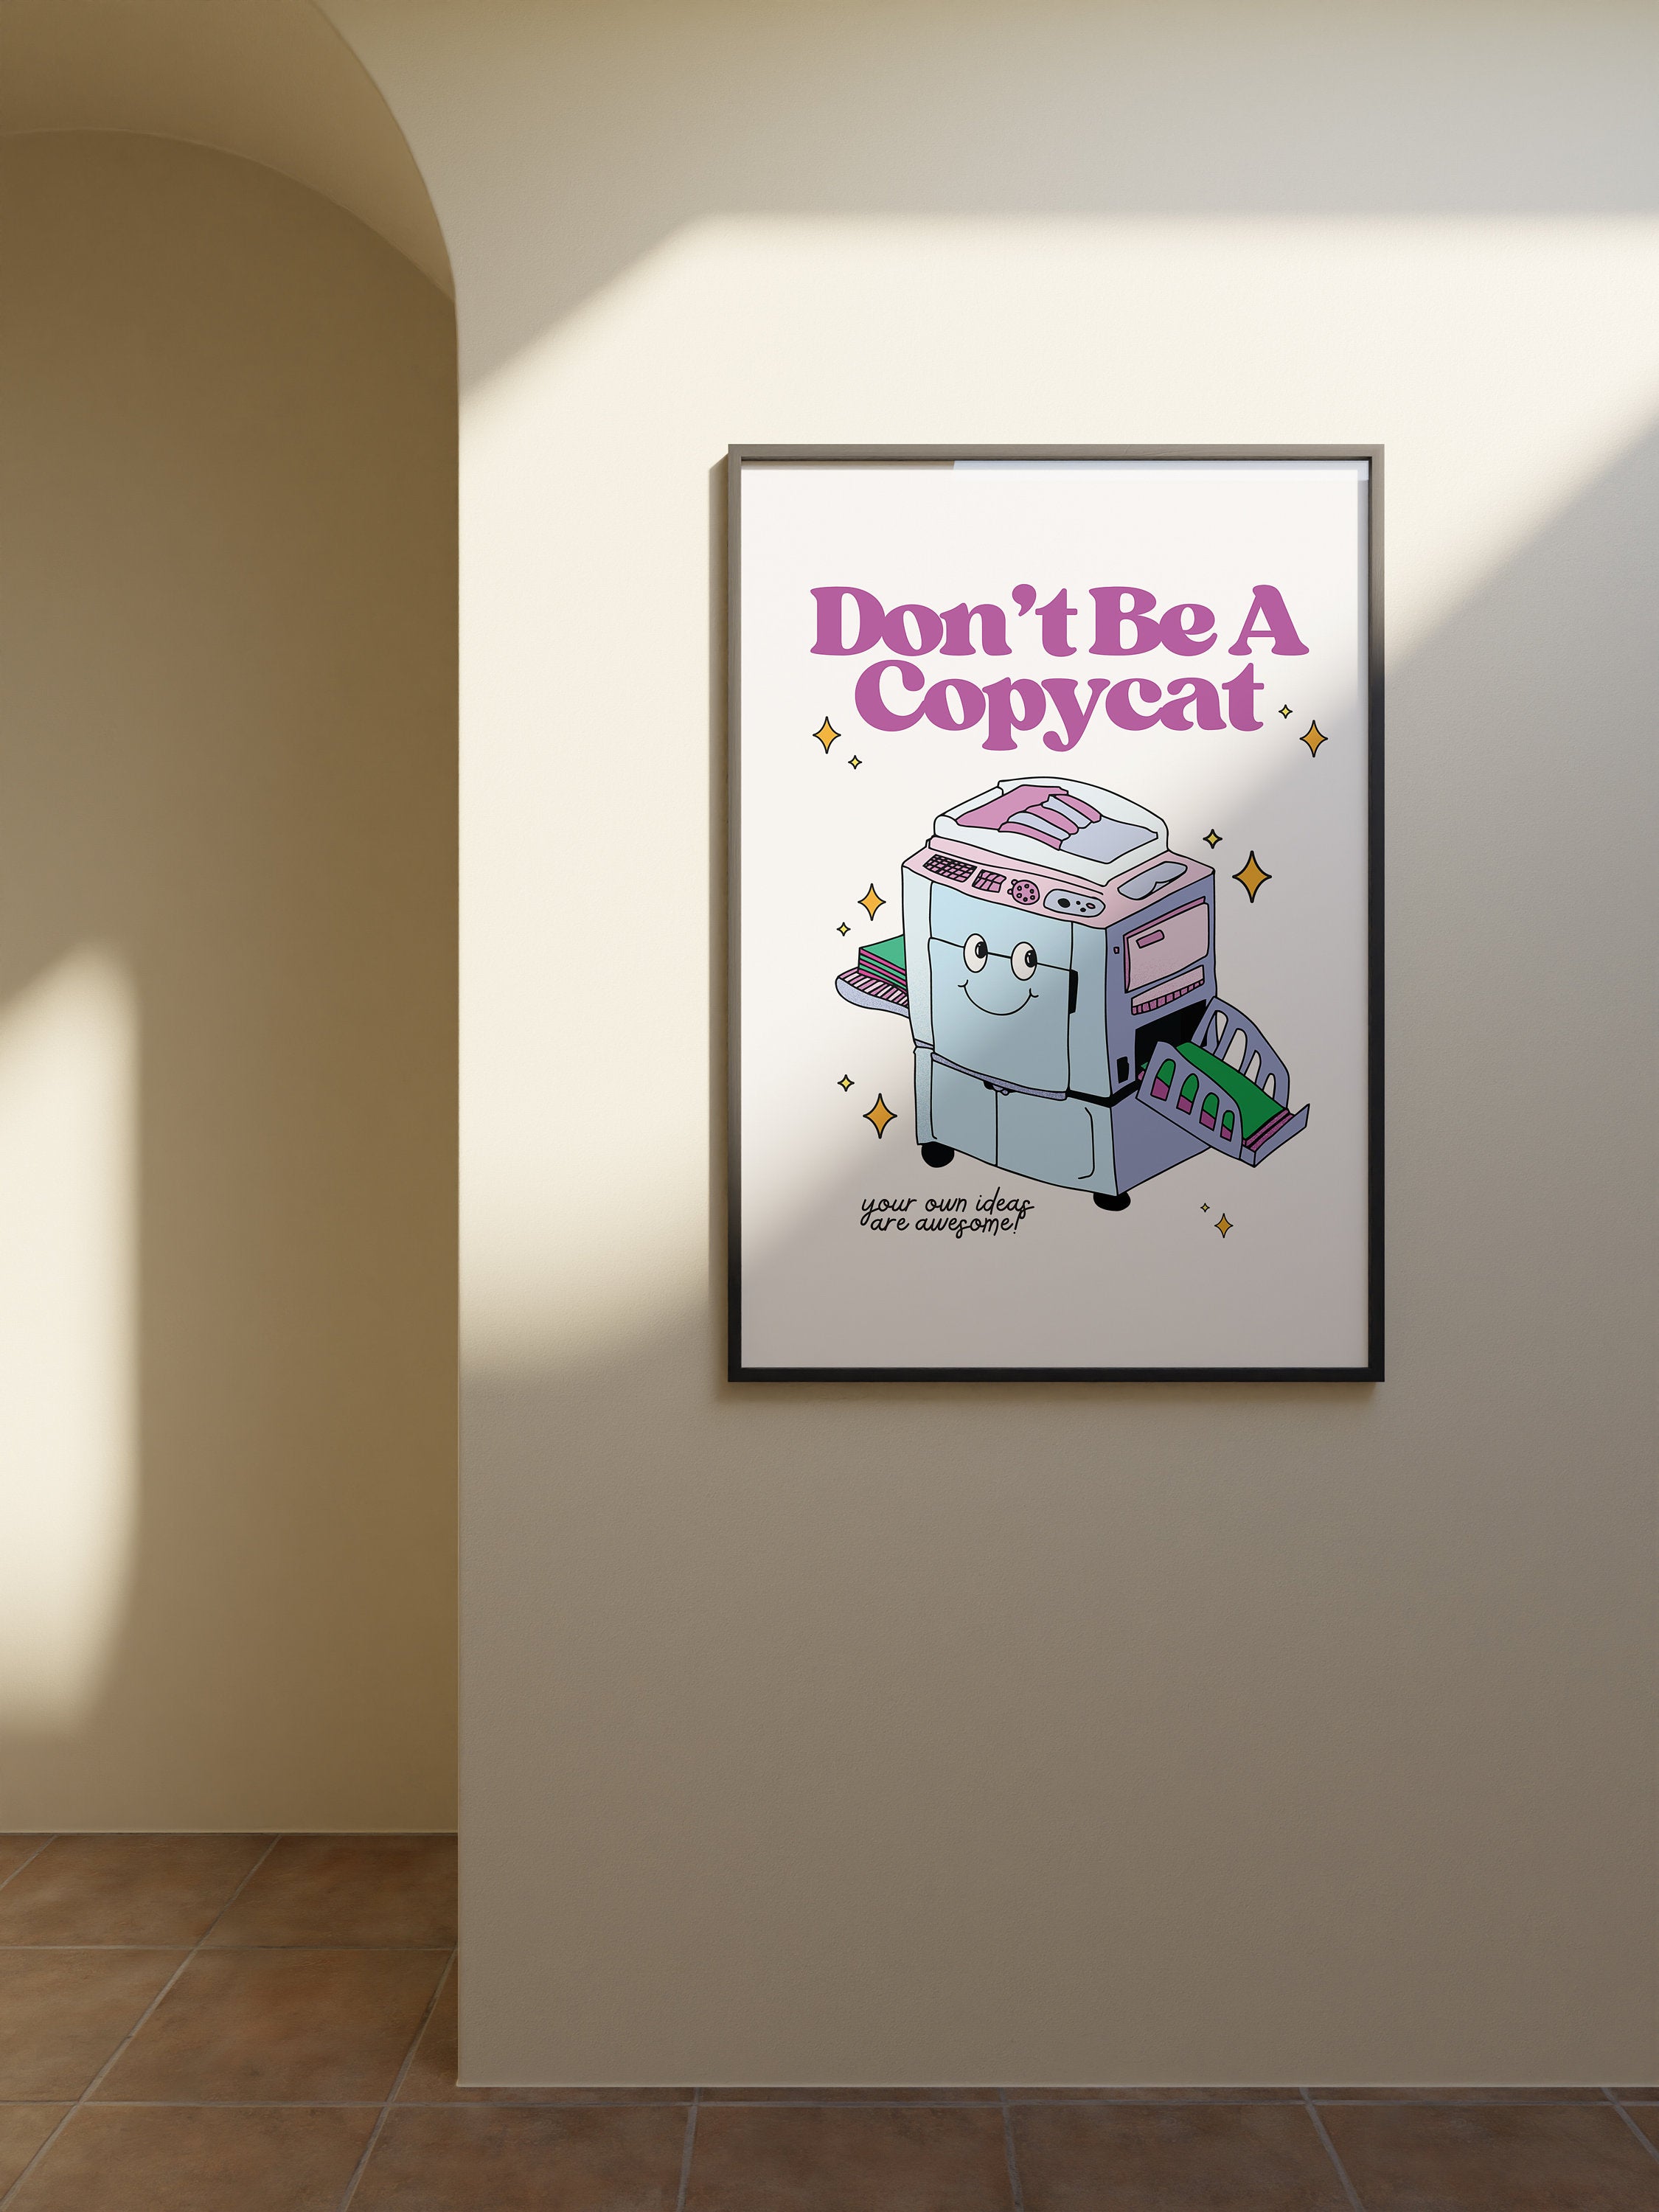 Don't be a copycat poster, Digital Prints, School Art, Instant Download, Classroom Art, Fun Kids poster, Learning Art, Classroom Posters